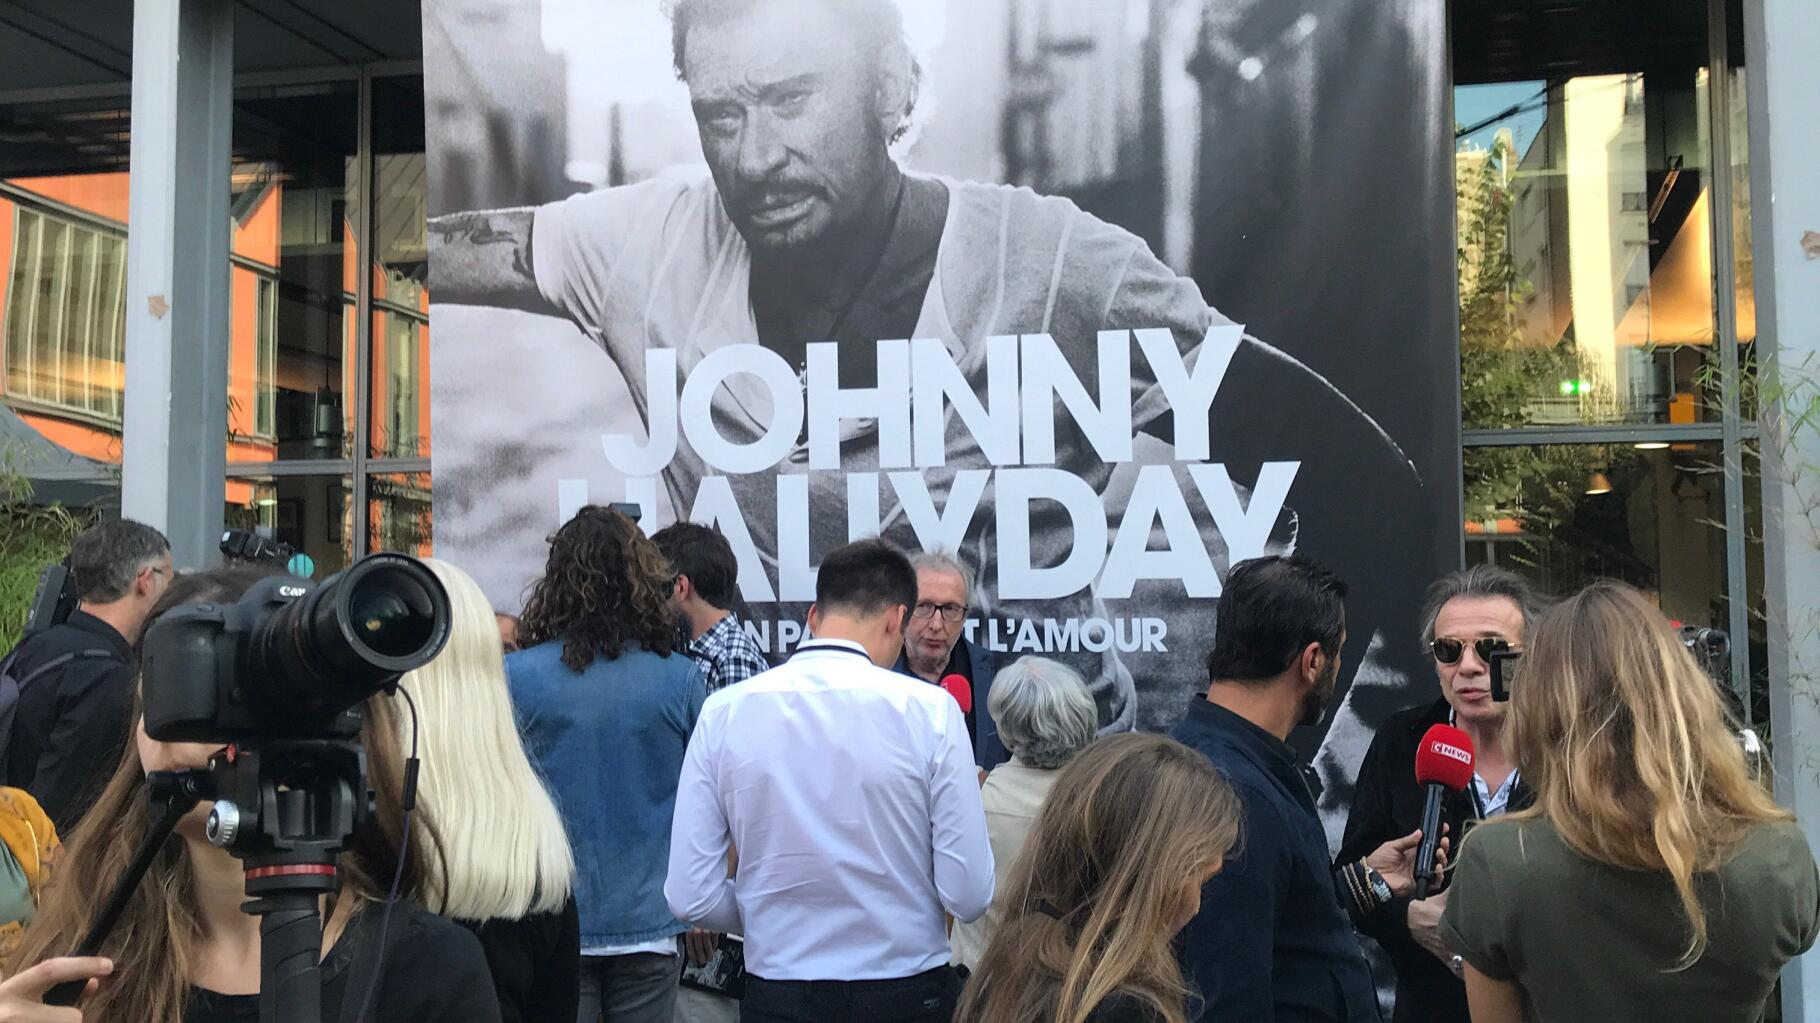 Mon pays c'est l'amour: on a écouté l'album de Johnny Hallyday